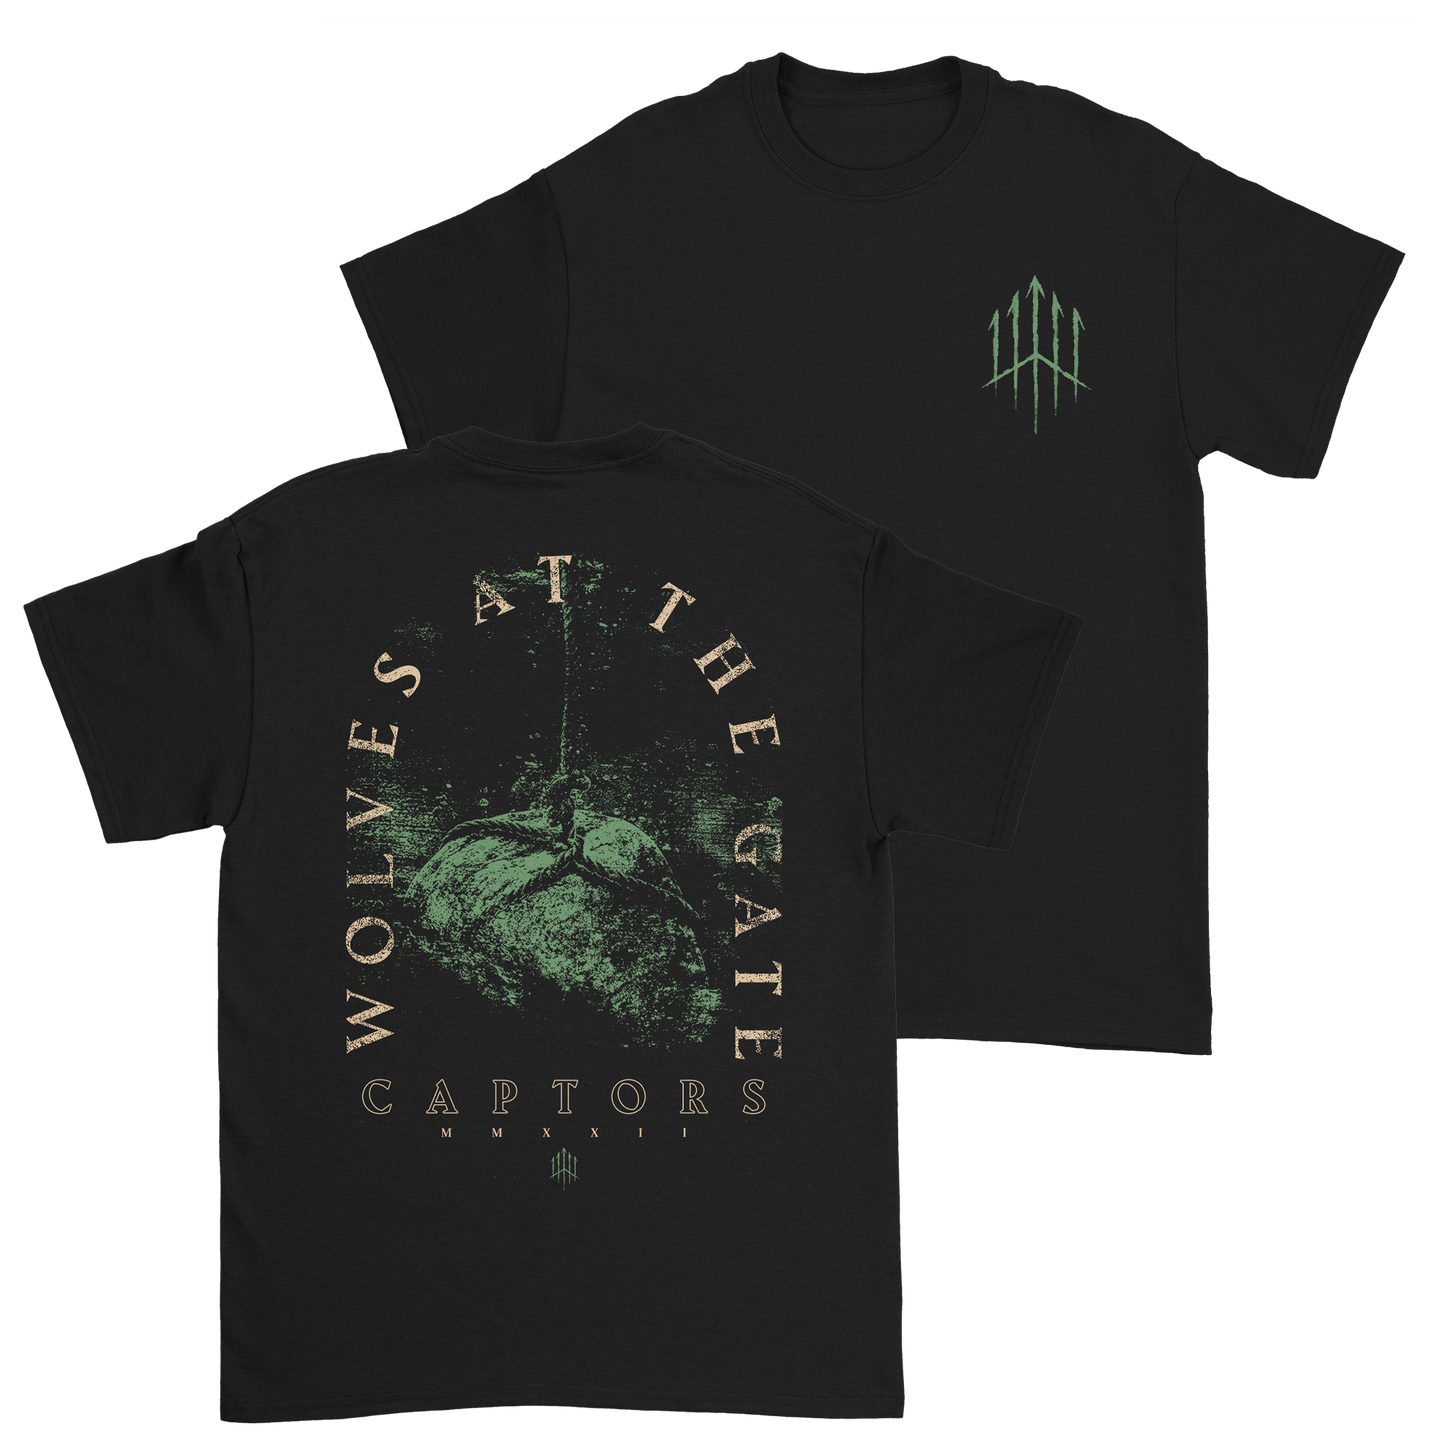 Captors T-Shirt (Limited Stock)